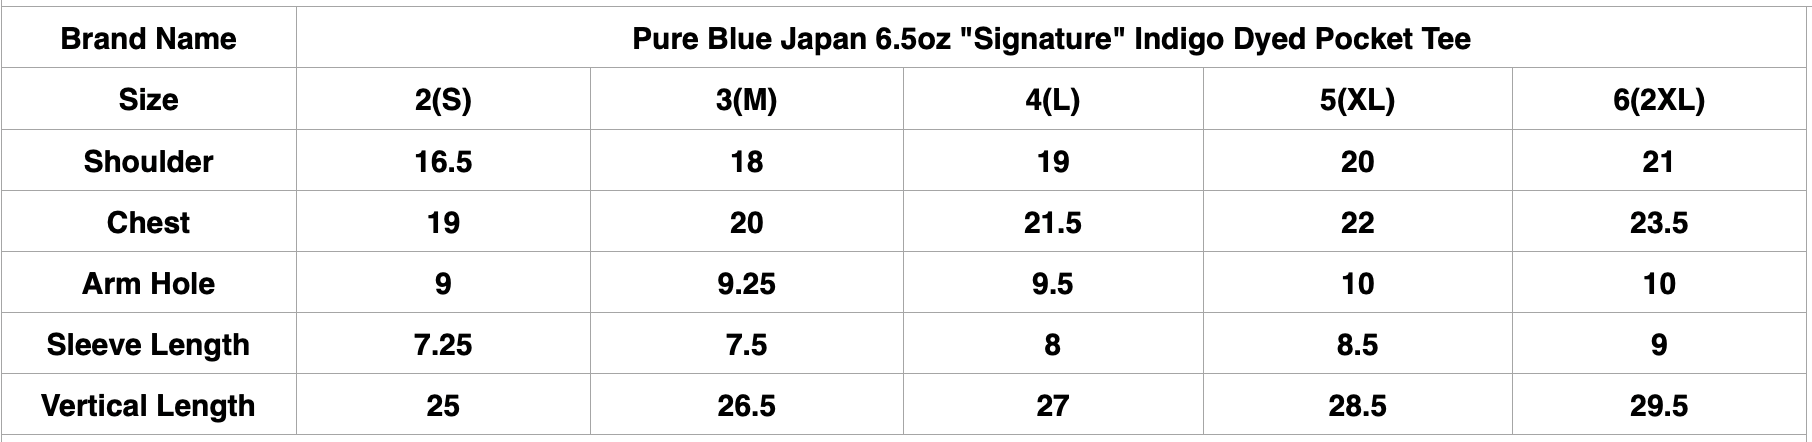 Pure Blue Japan 6.5oz "Signature" Indigo Dyed Pocket Tee (Icy Indigo)